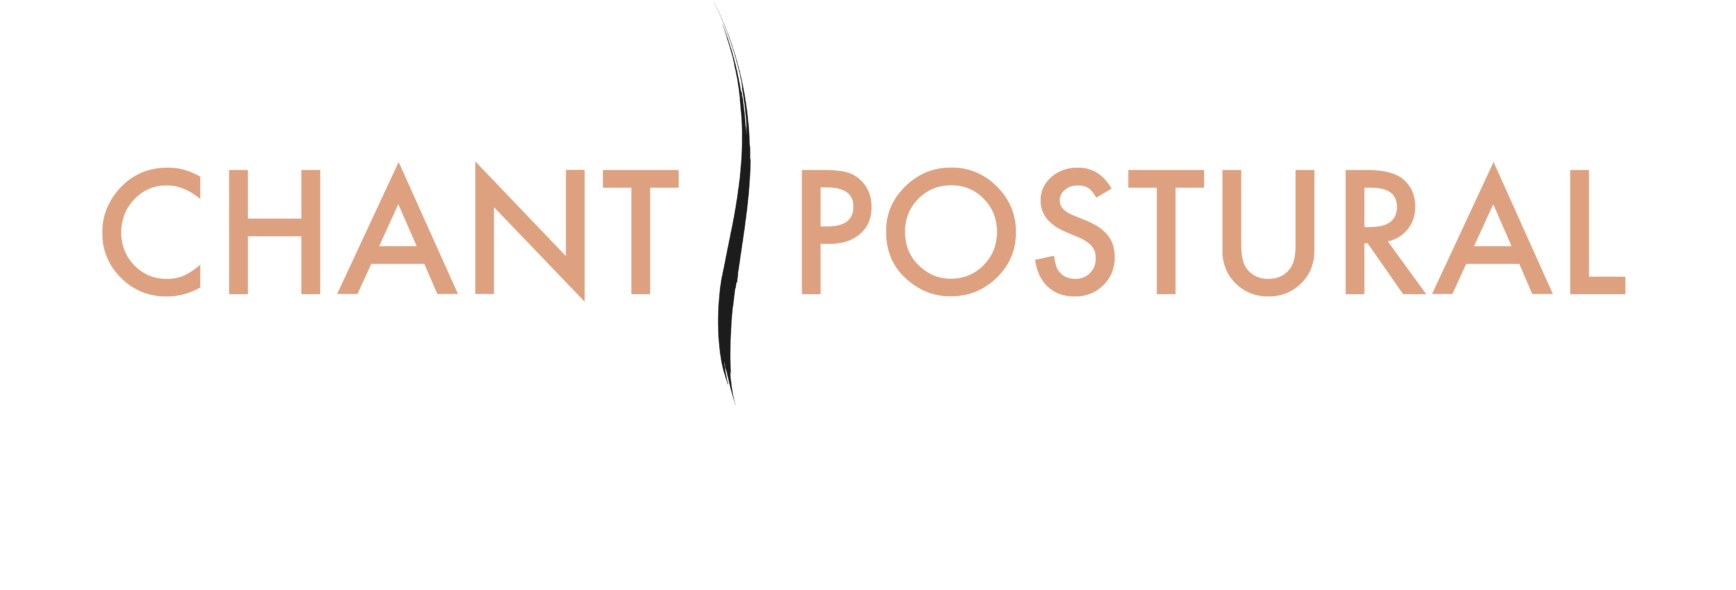 Chant postural logo